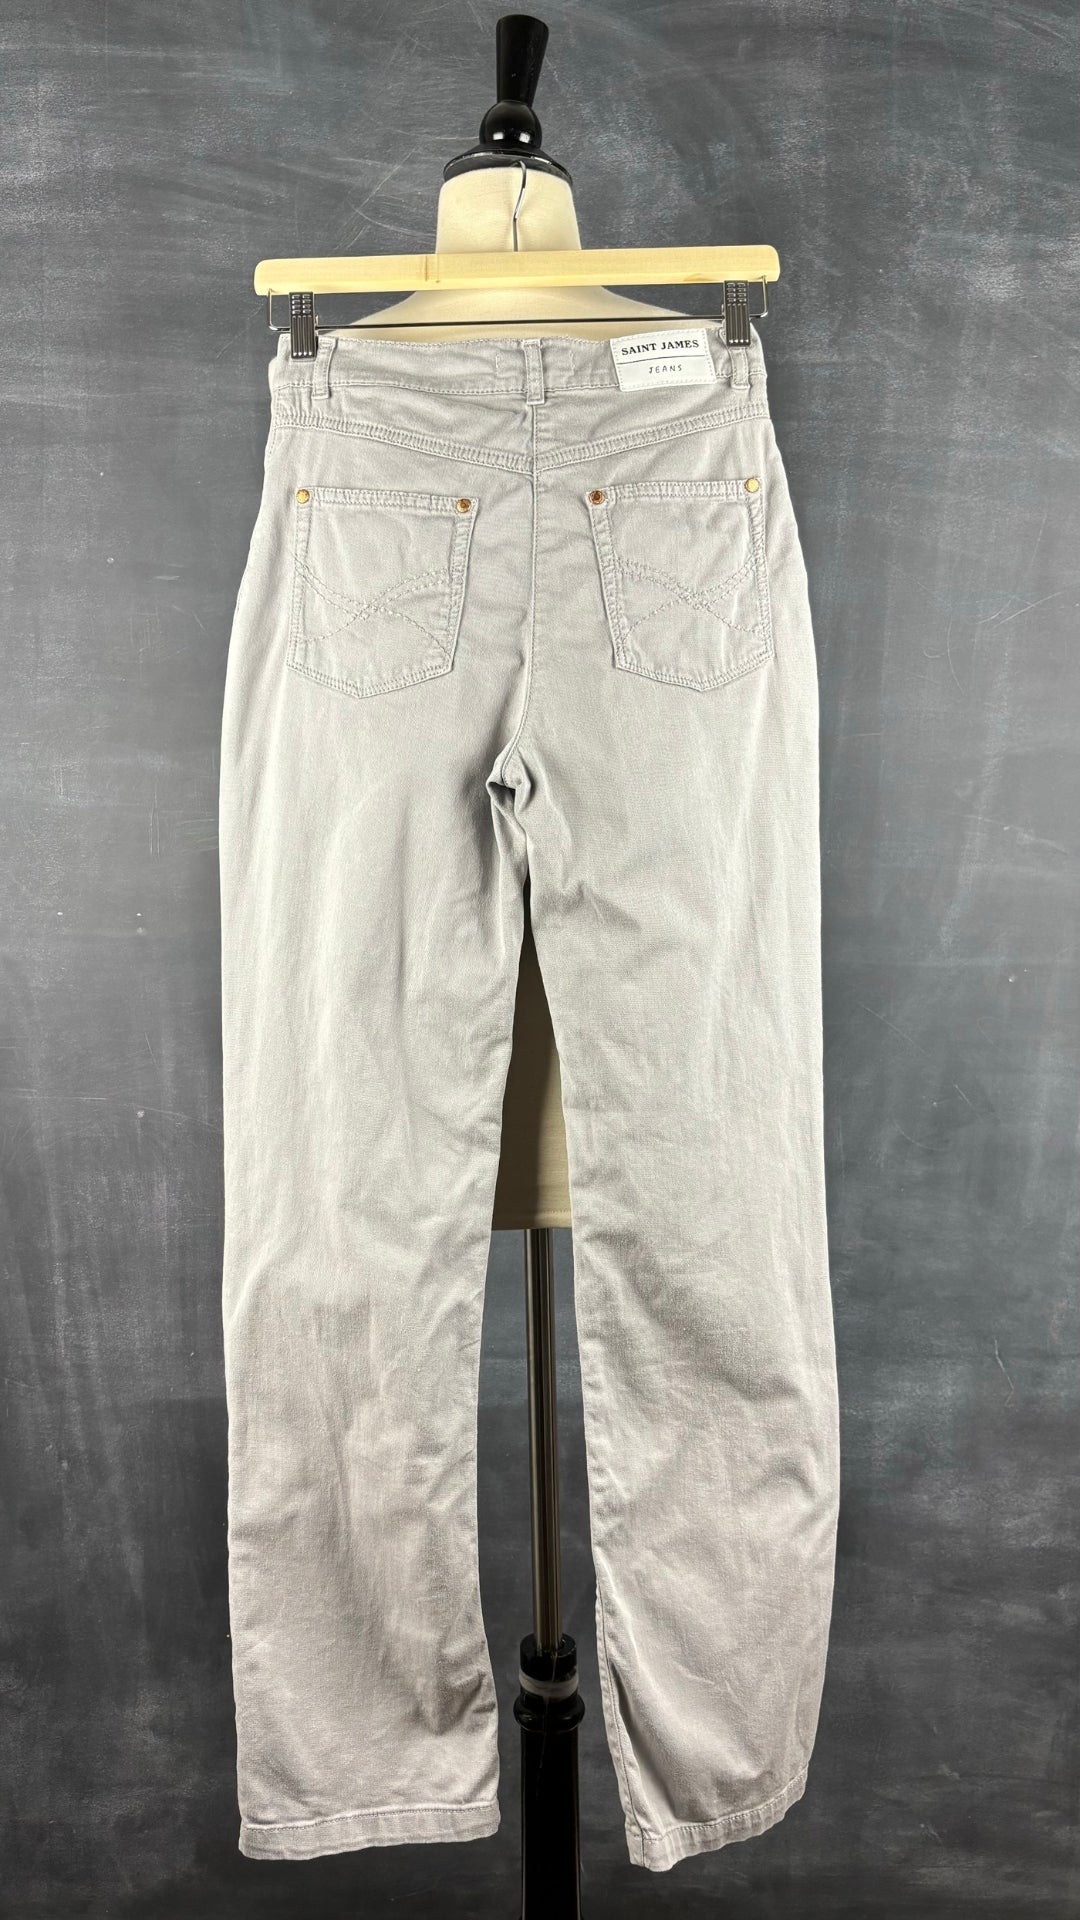 Pantalon style jeans gris coupe droite taille moyenne Saint James, taille 4 (xs). Vue de dos.